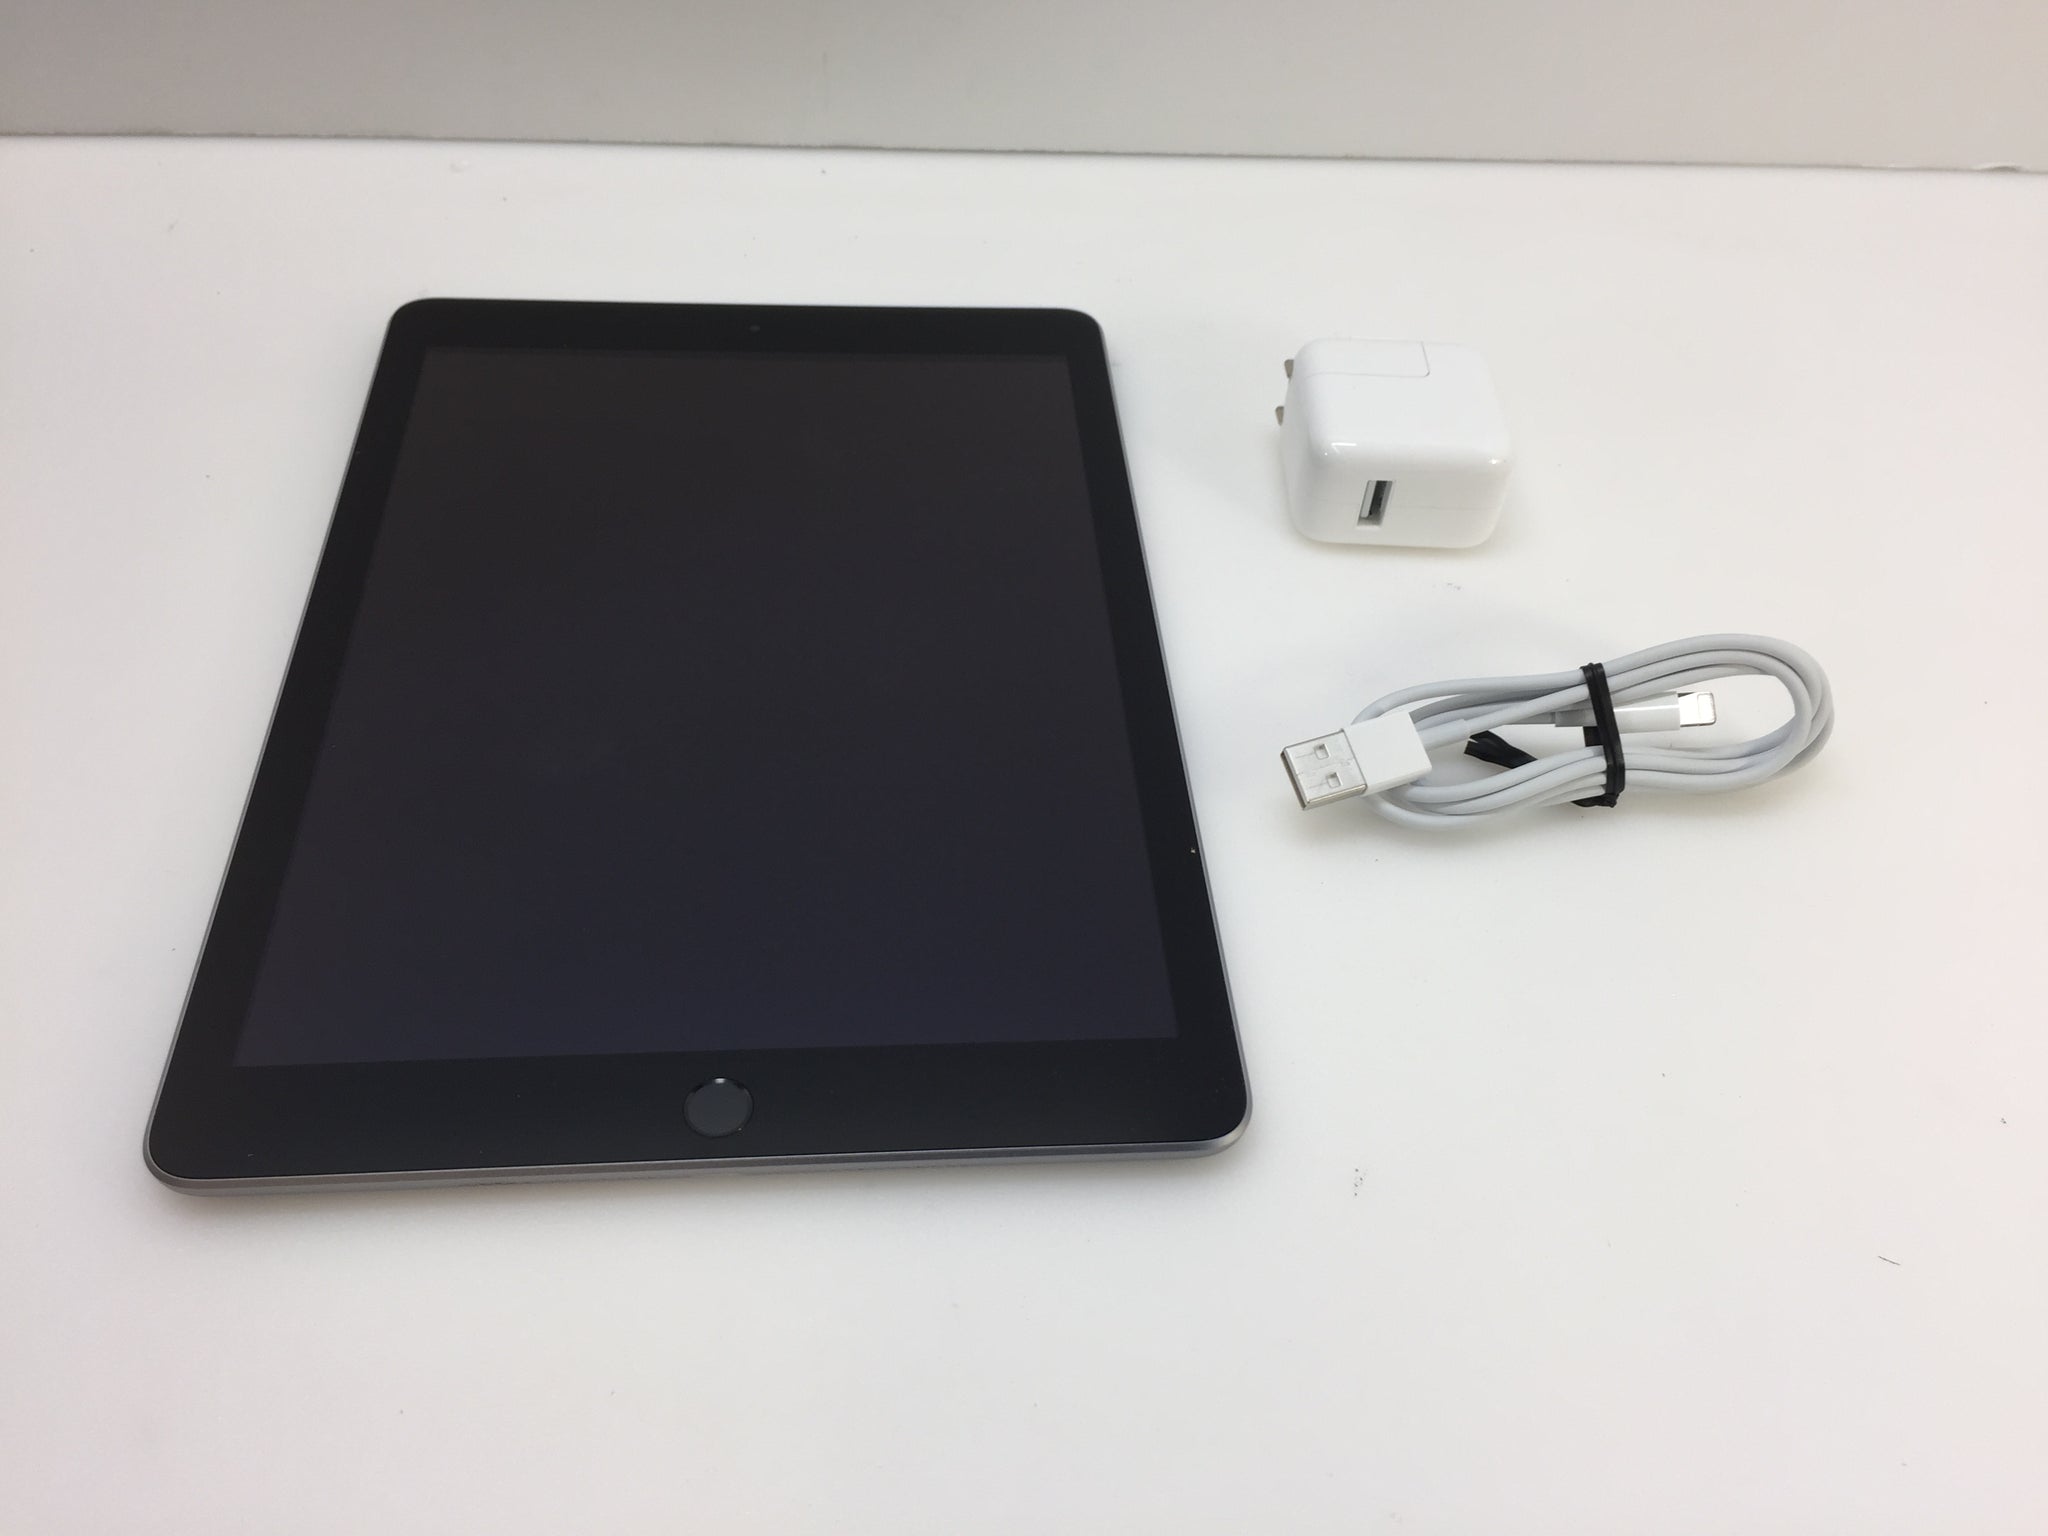 Apple iPad 5th Gen 32GB Wi-Fi 9.7in 3C668LL/A A1822 Tablet - Space